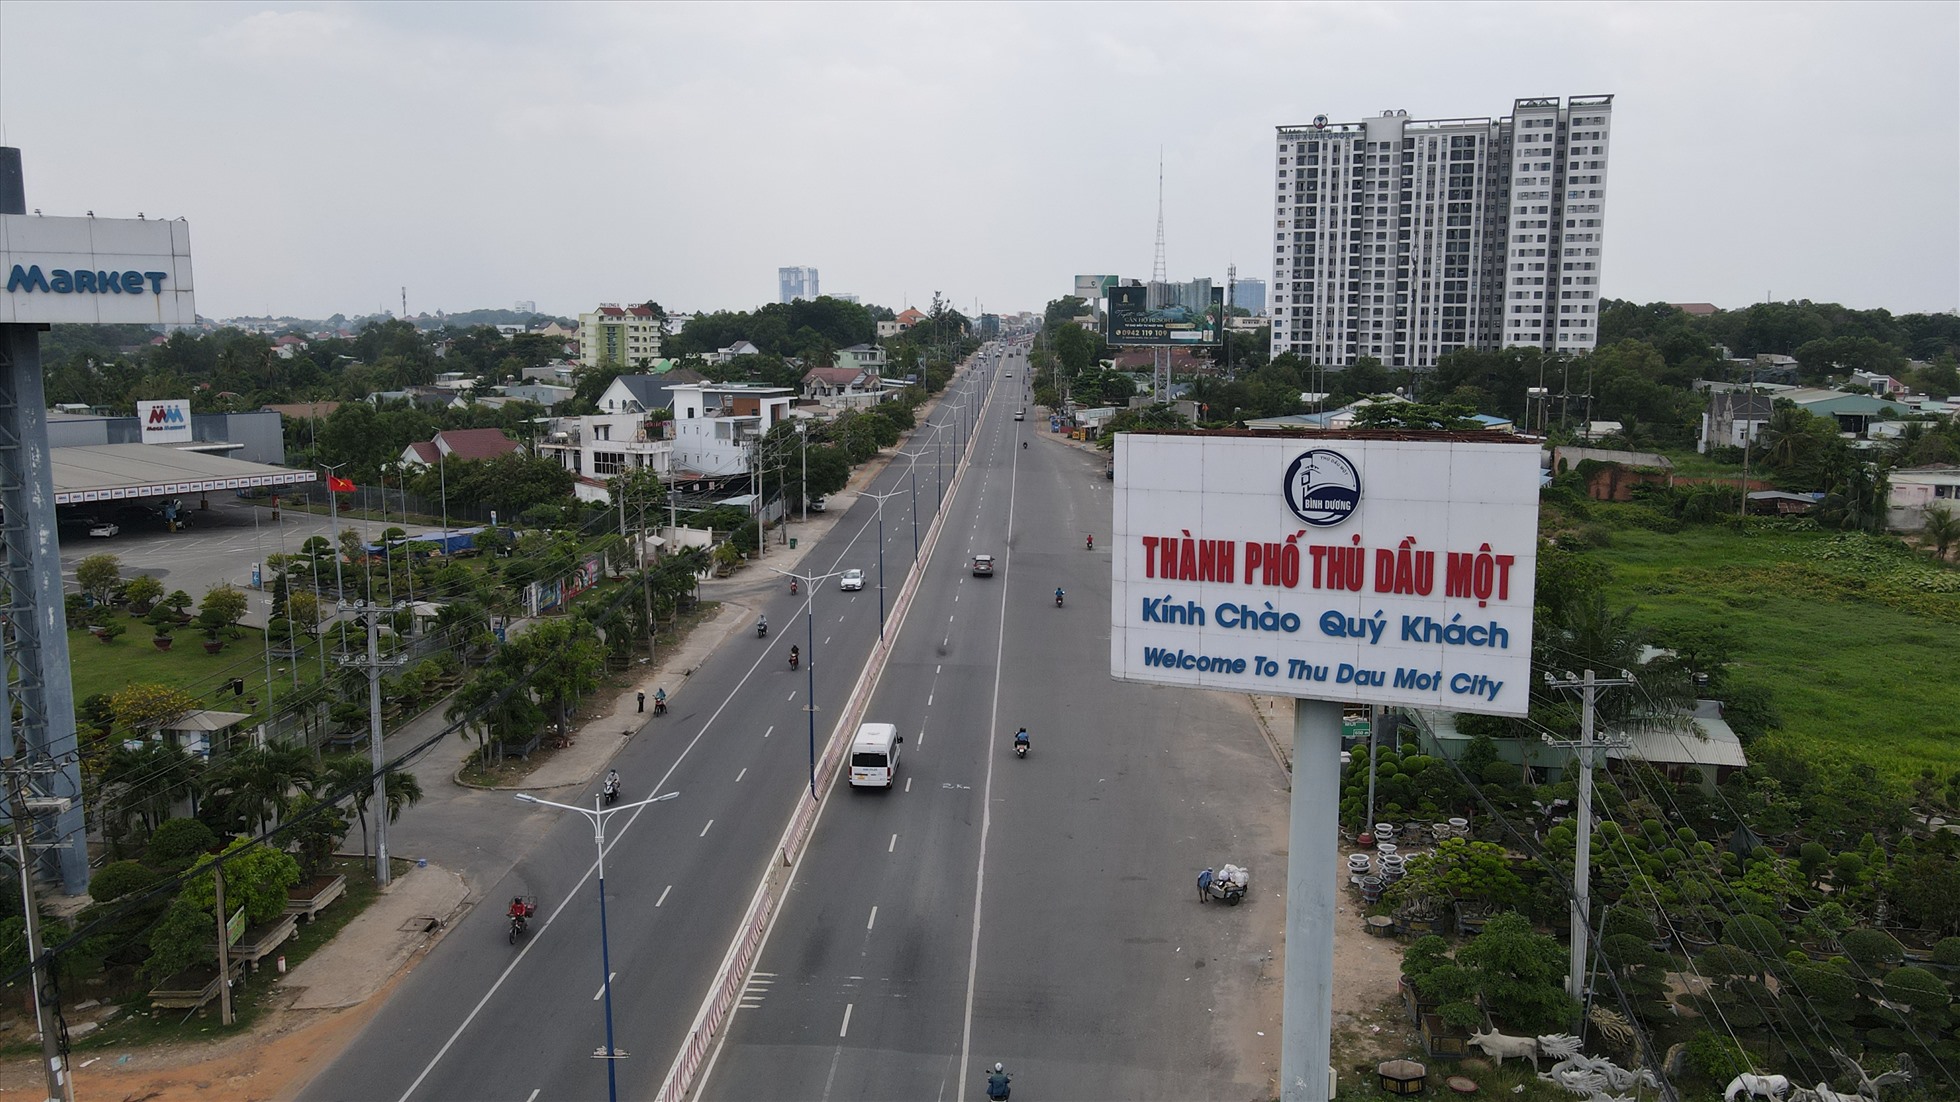 Đây là quốc lộ 13 đoạn giáp ranh thành phố Thuận An và thành phố Thủ Dầu Một tỉnh Bình Dương. Trước đây, quốc lộ 13 là trục giao thông chính của Bình Dương. Hiện tuyến đường này đang thực hiện dự án nâng cấp mở rộng lên 8 làn đường.